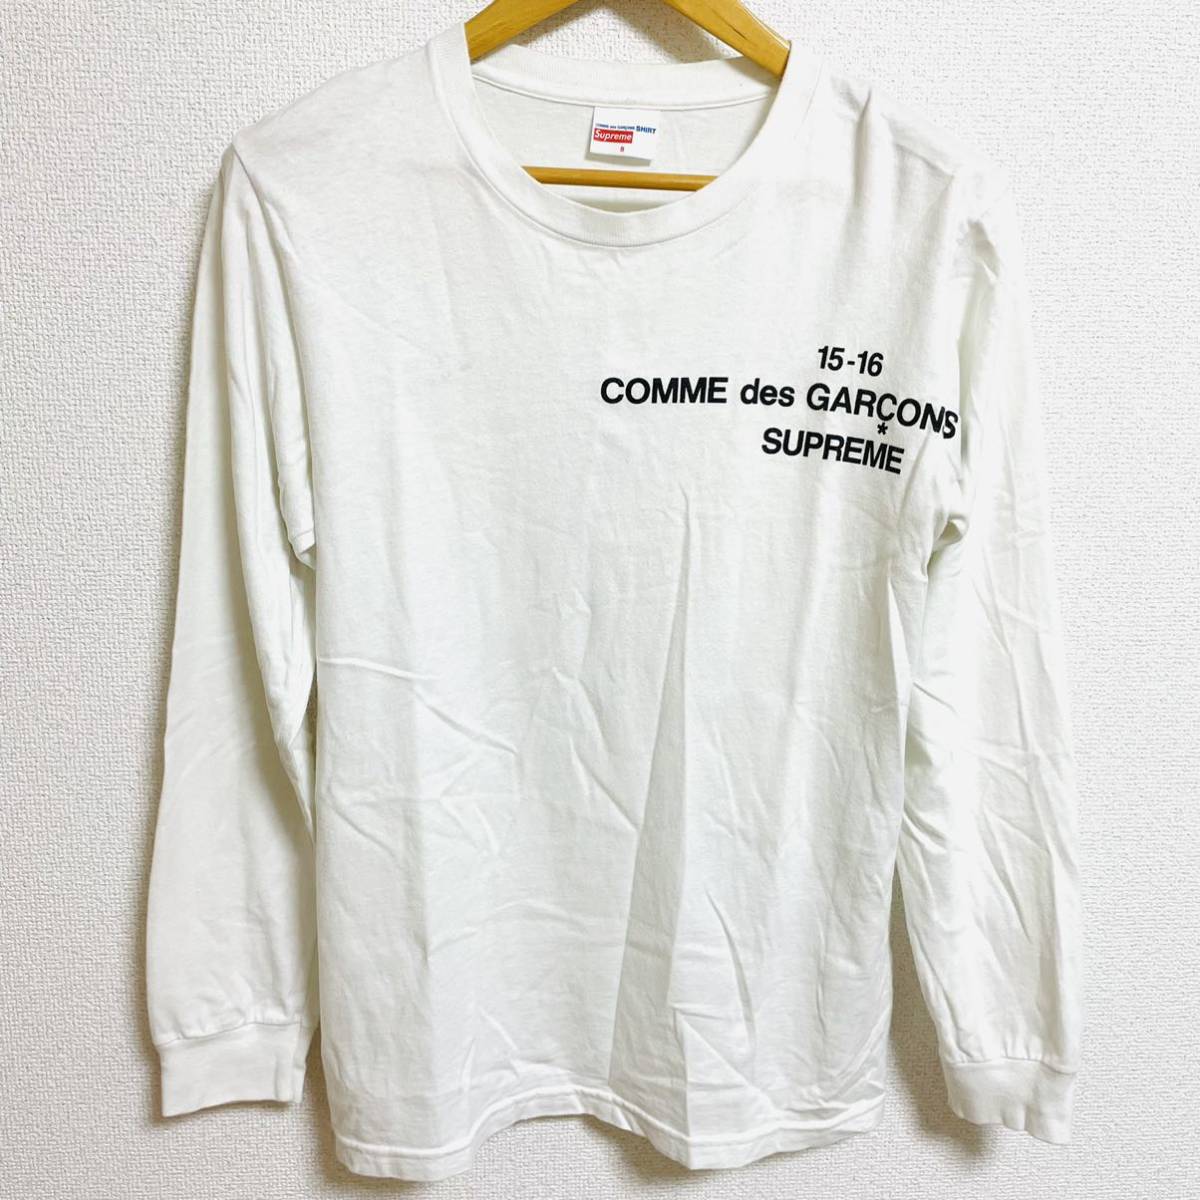 超特価SALE開催！】 S Black White Tee L/S Shirt Garcons Des Comme Supreme 15aw 胸ロゴ  コラボ ロンT ロングスリーブ コムデギャルソン 黒 白 2015年 長袖Tシャツ - codecam.be